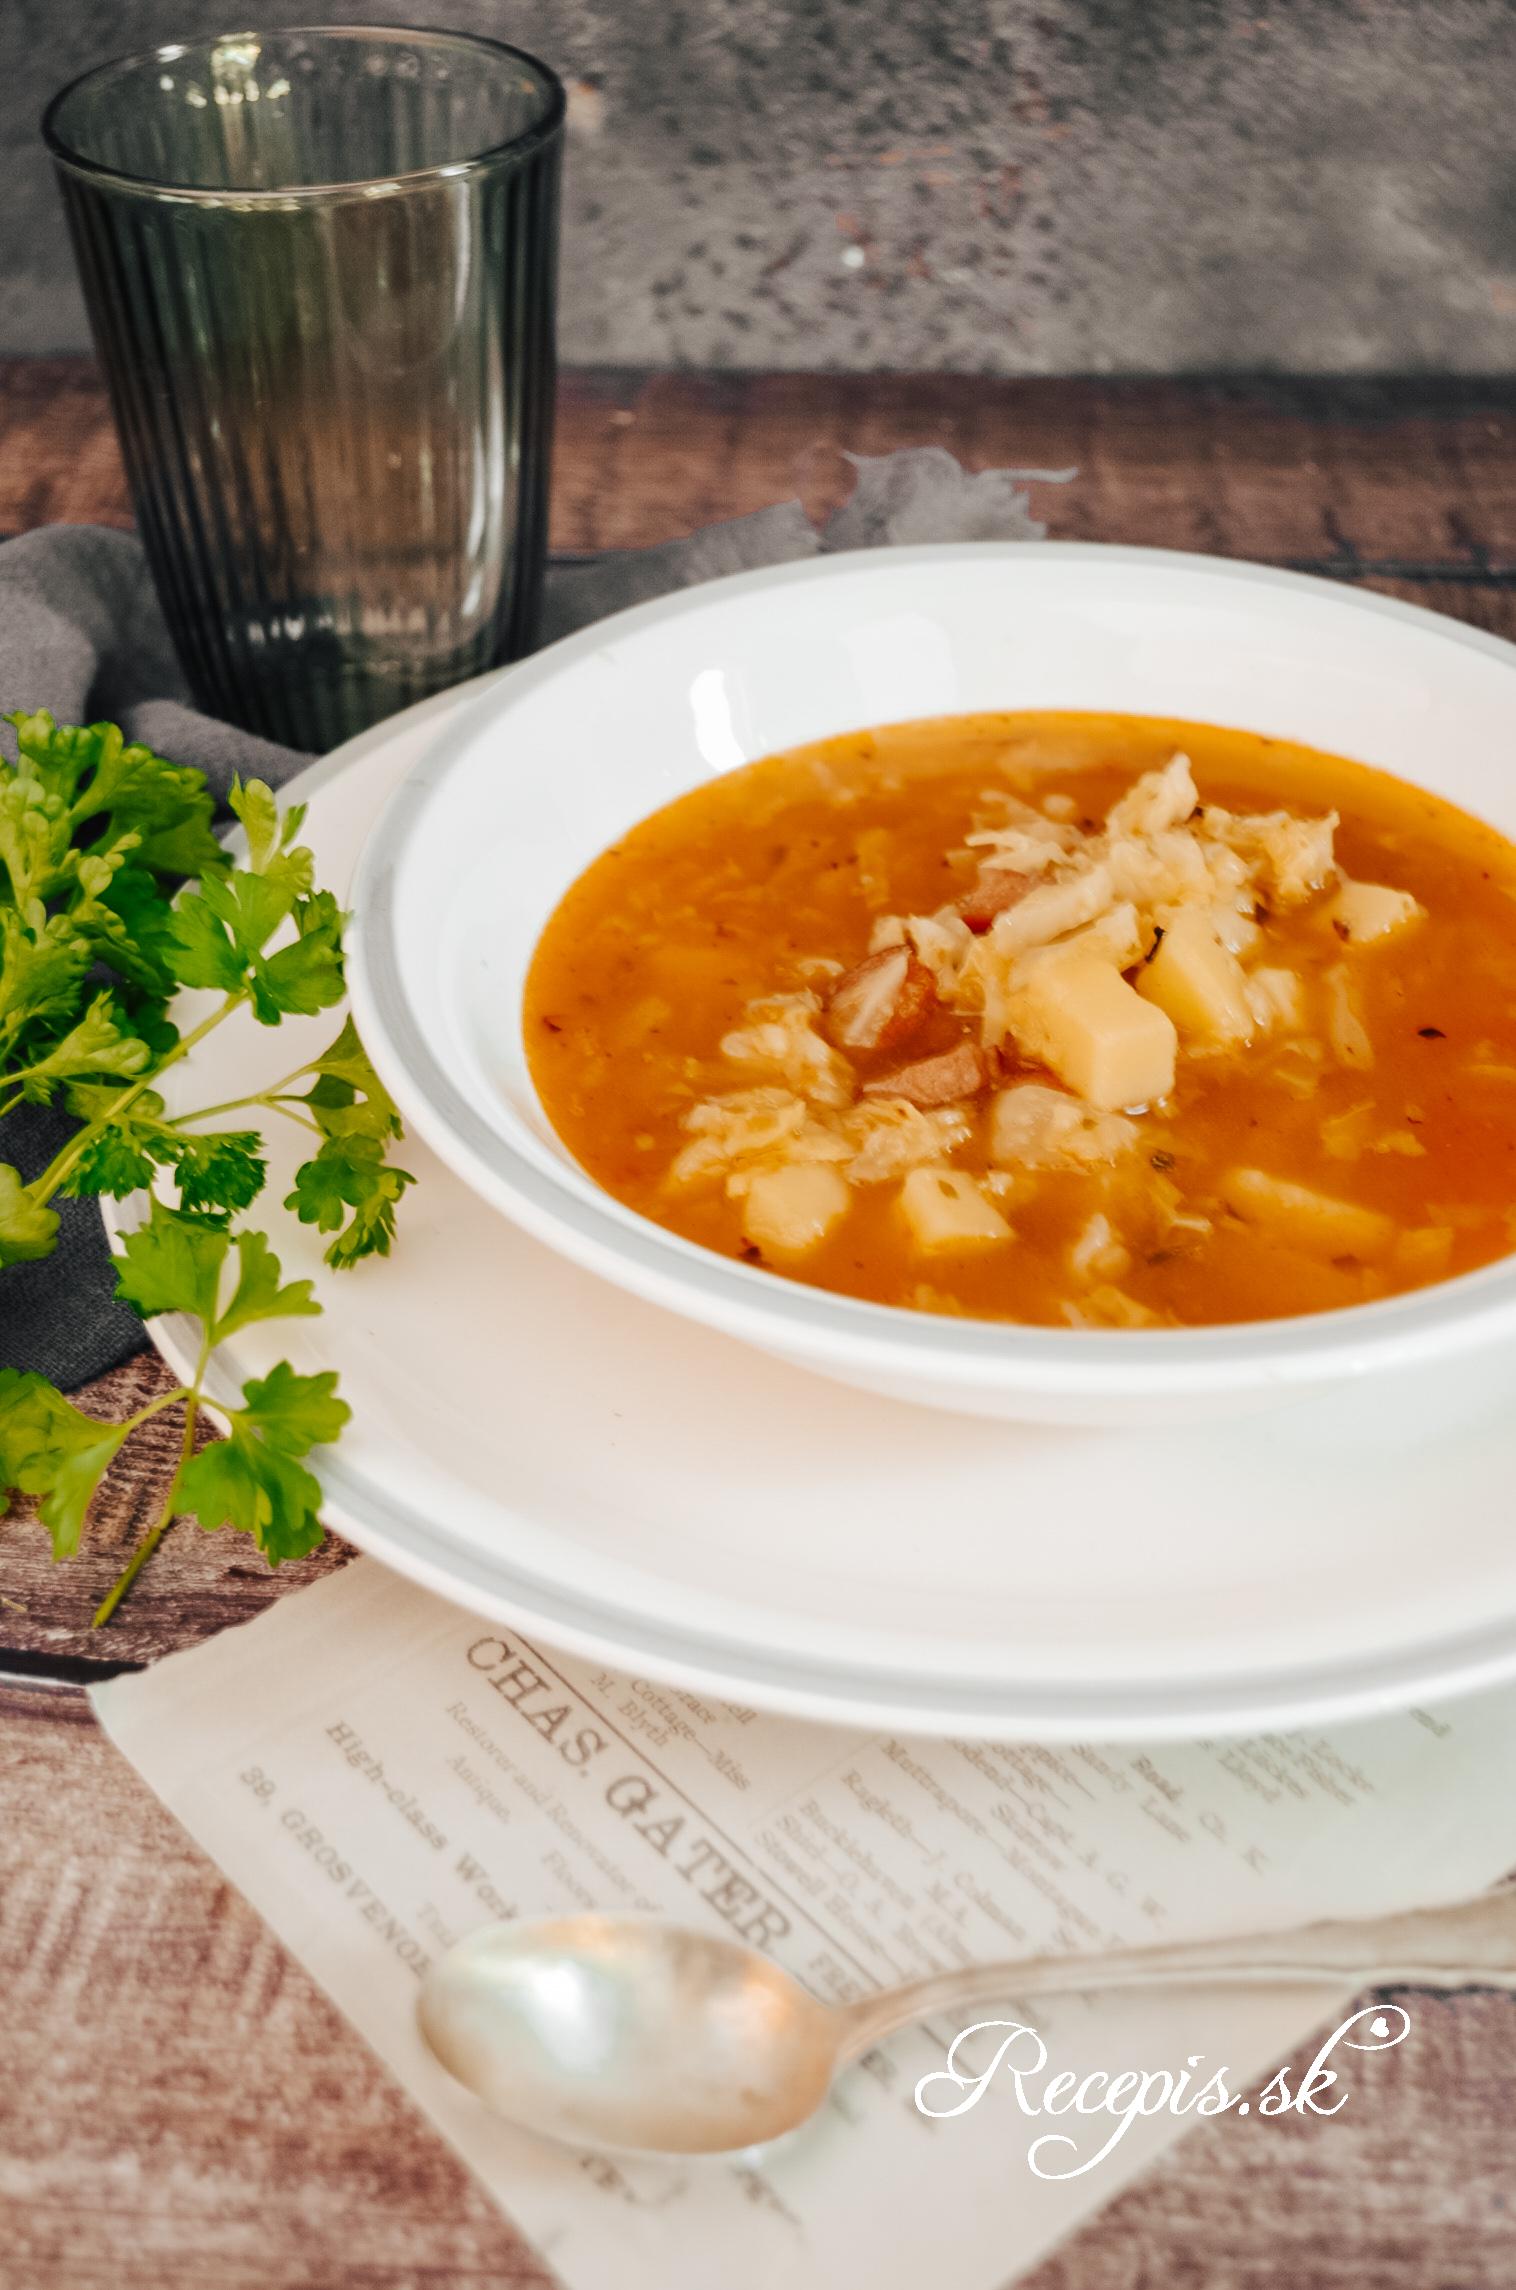 kelová polievka recept tradičný